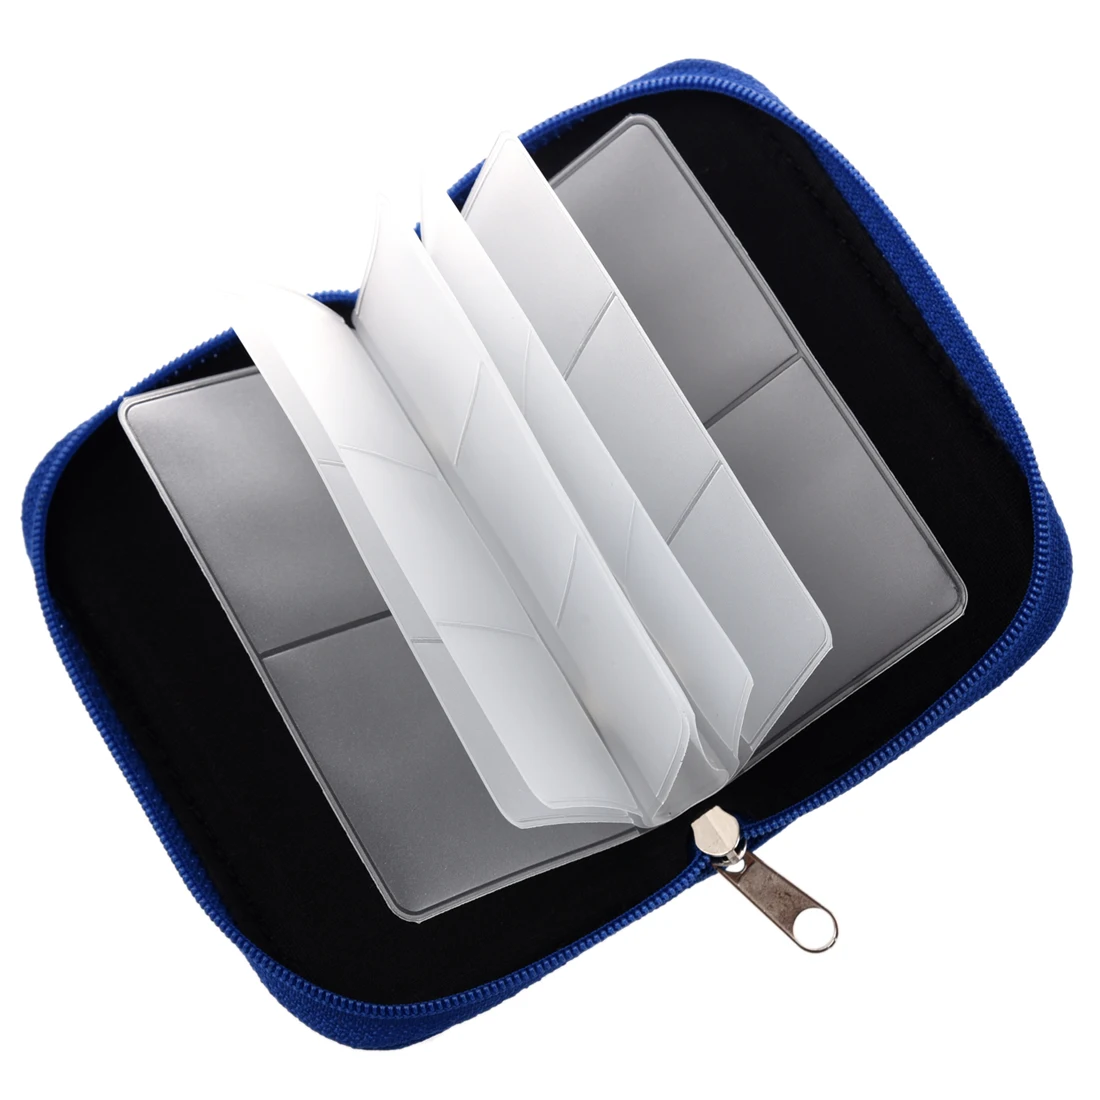 Горячая Распродажа чехол сумка для 22 мини-карты памяти SD XD синий